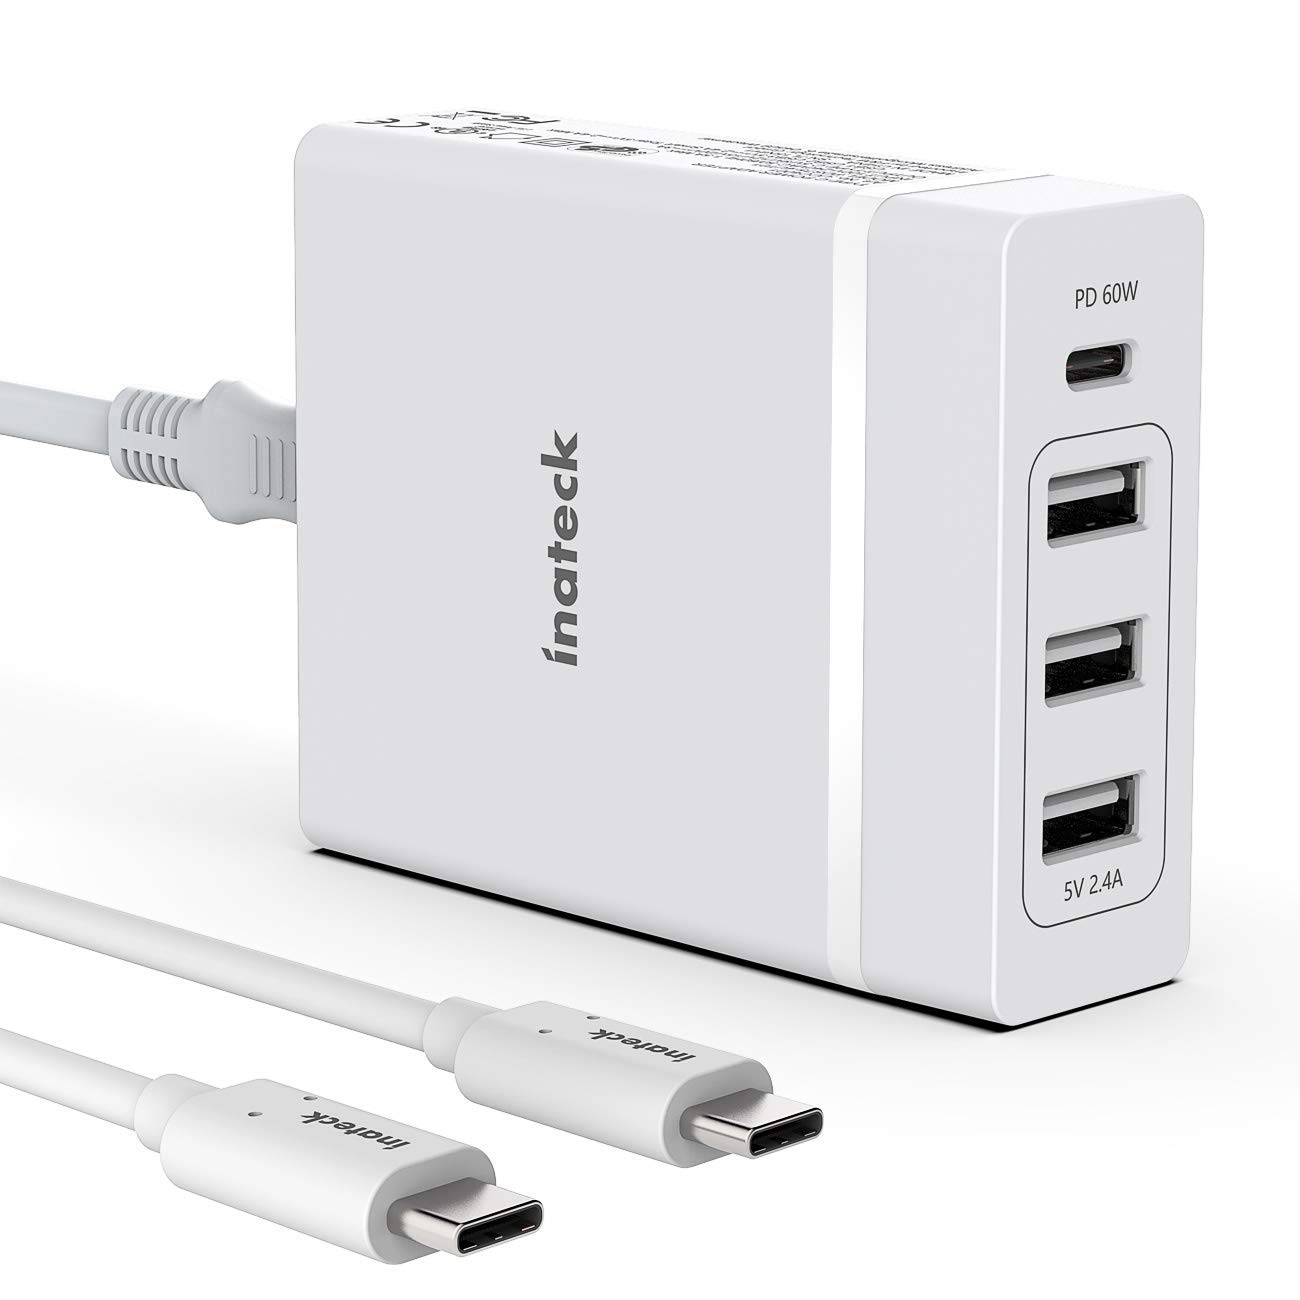 Inateck 4 Ports 72W USB C Ladegerät mit 2M Type C Kabel, 60 W USB C Port und 3 USB A Ports für Laptops, Tablets, Phones wie iPhone XS/XS Max/XR, Weiß